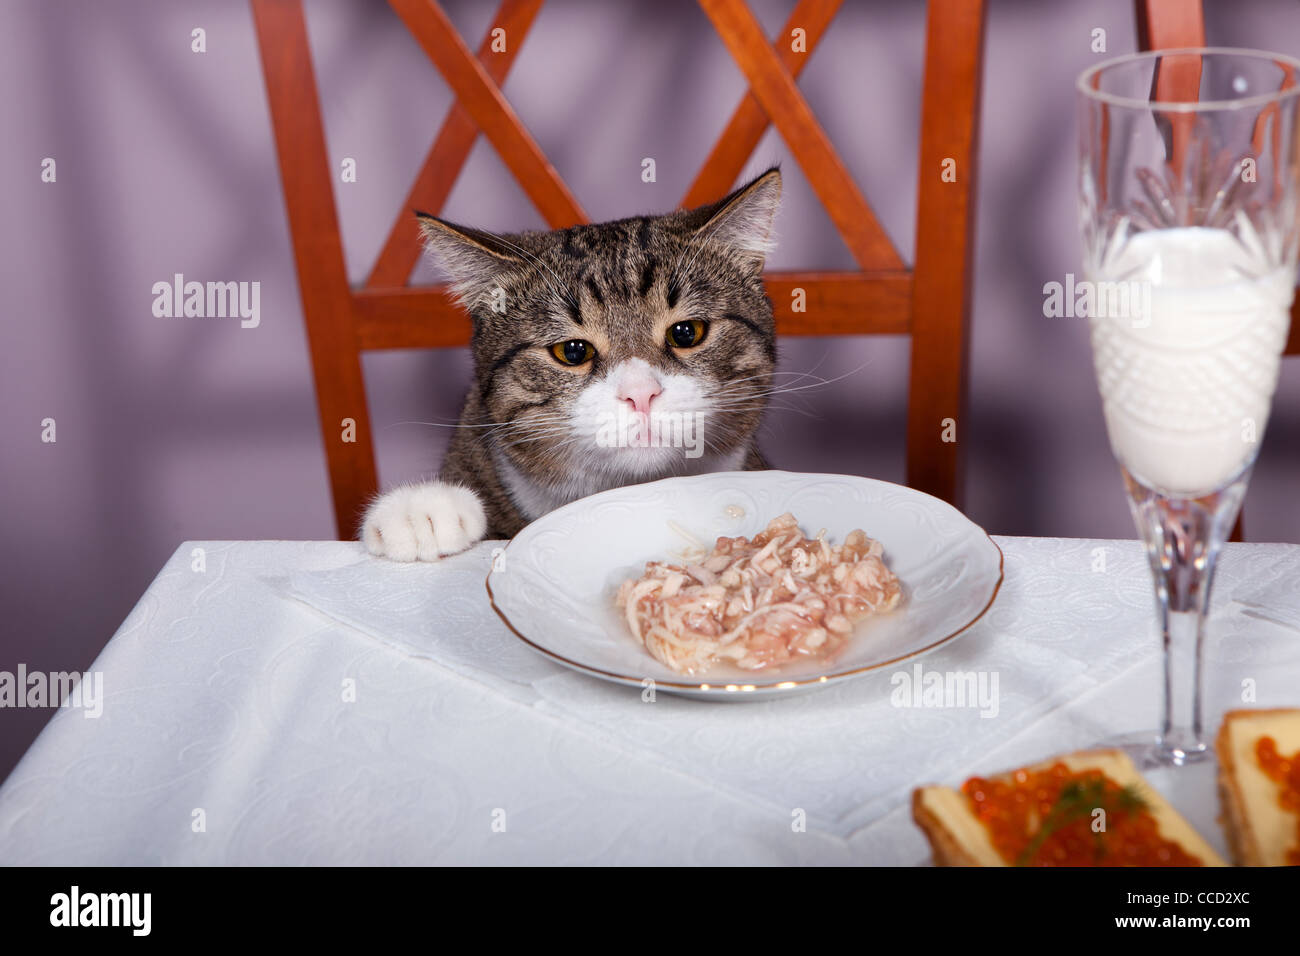 Включи коте ресторан. Котик в ресторане. Котик с Оливье. Котик ест Оливье. Кот в ресторане за столом.